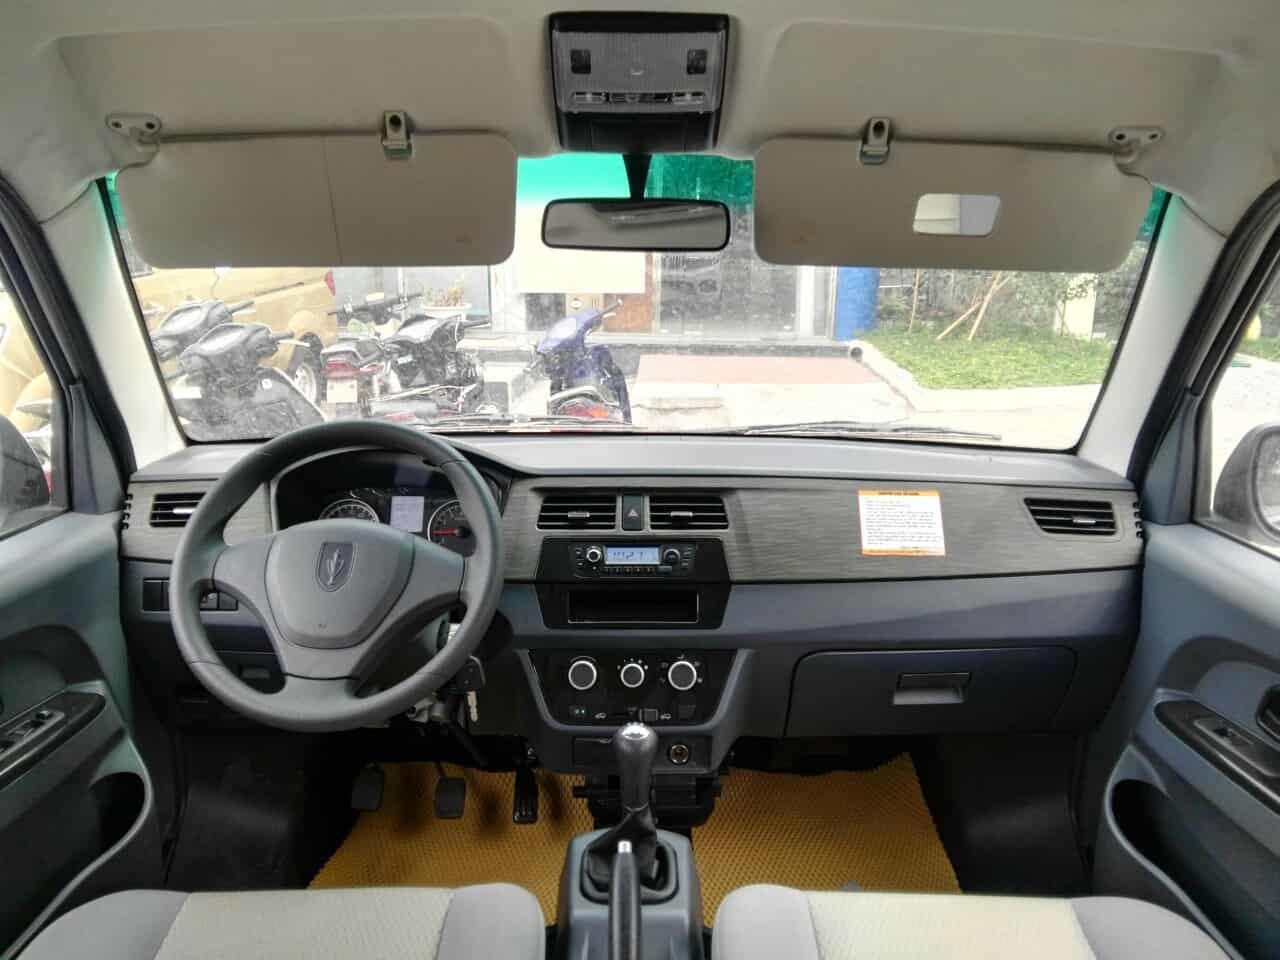 Xe ô tô tải Van Dongben DBX30-V2s, 02 chỗ ngồi, tải trọng 950kg